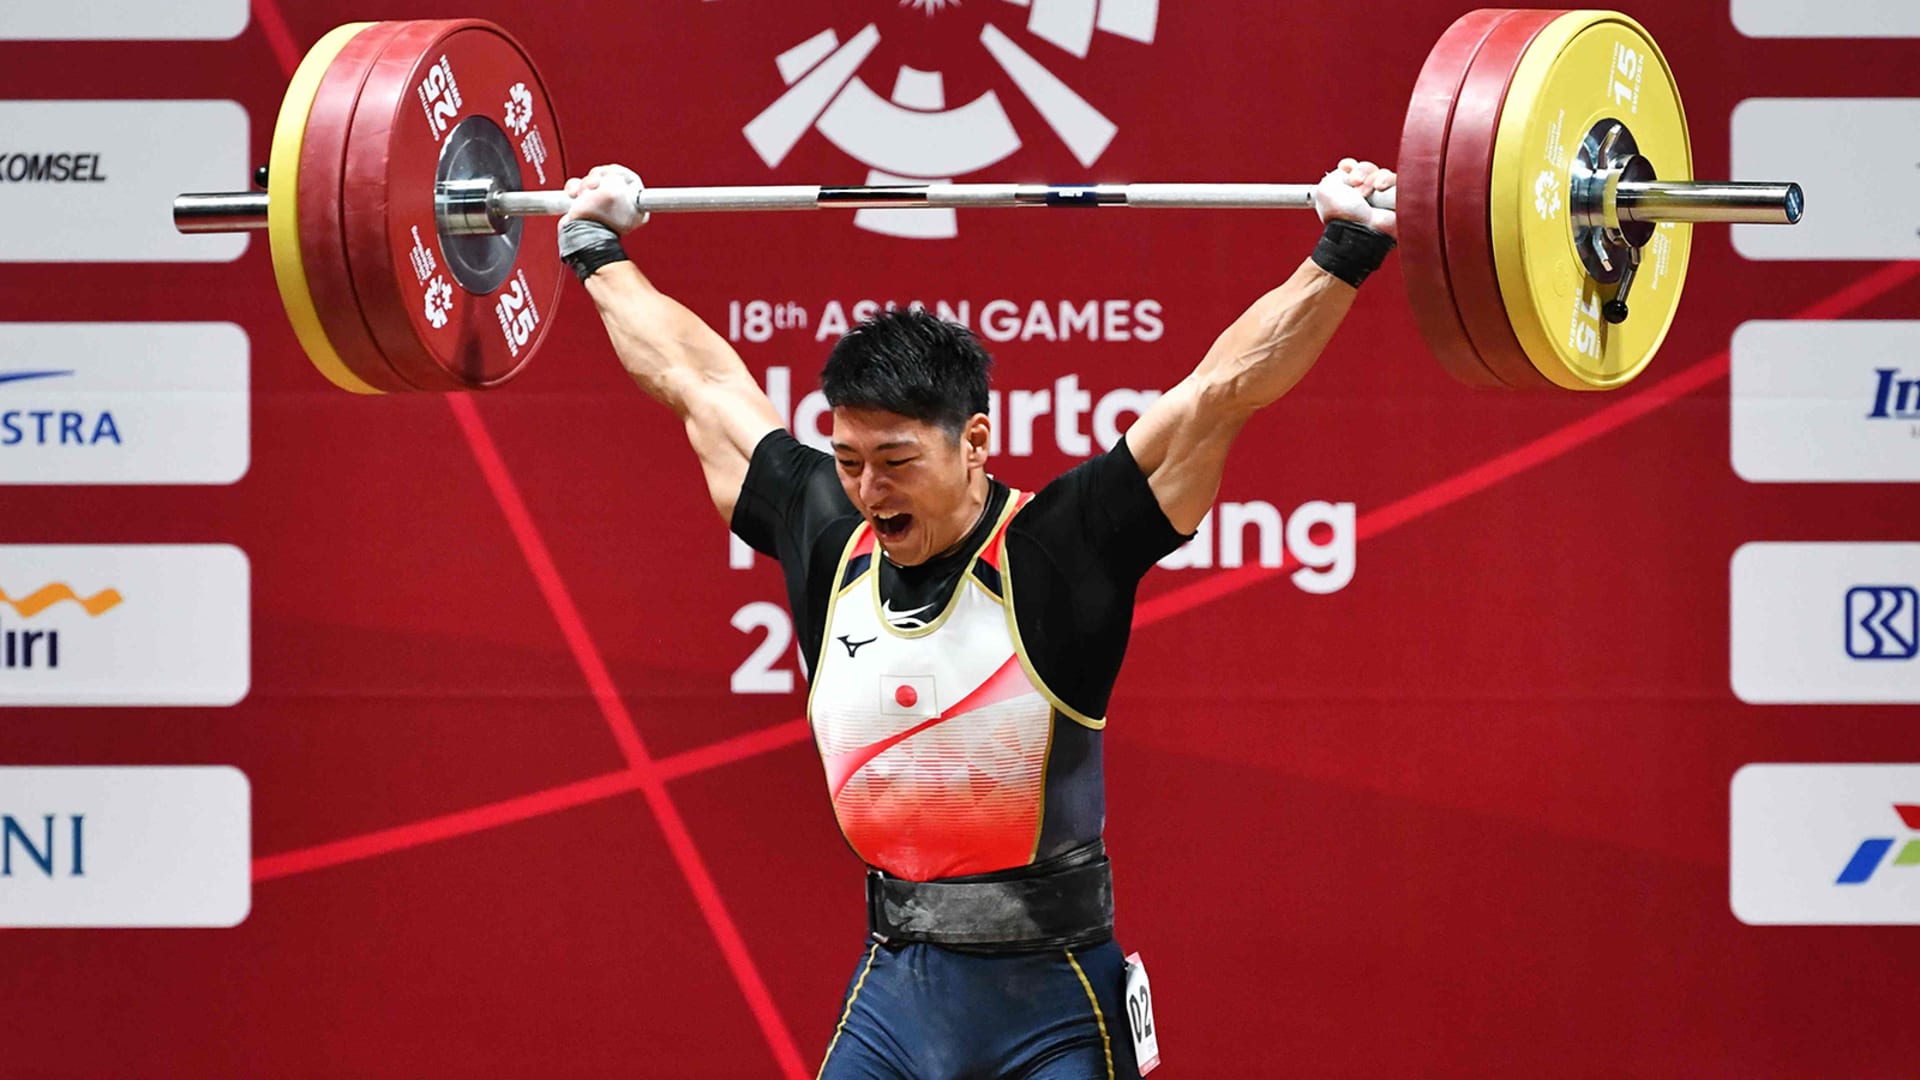 ウエイトリフティング 世界選手権6日目 男子89kg級 山本俊樹がジャークで金メダル